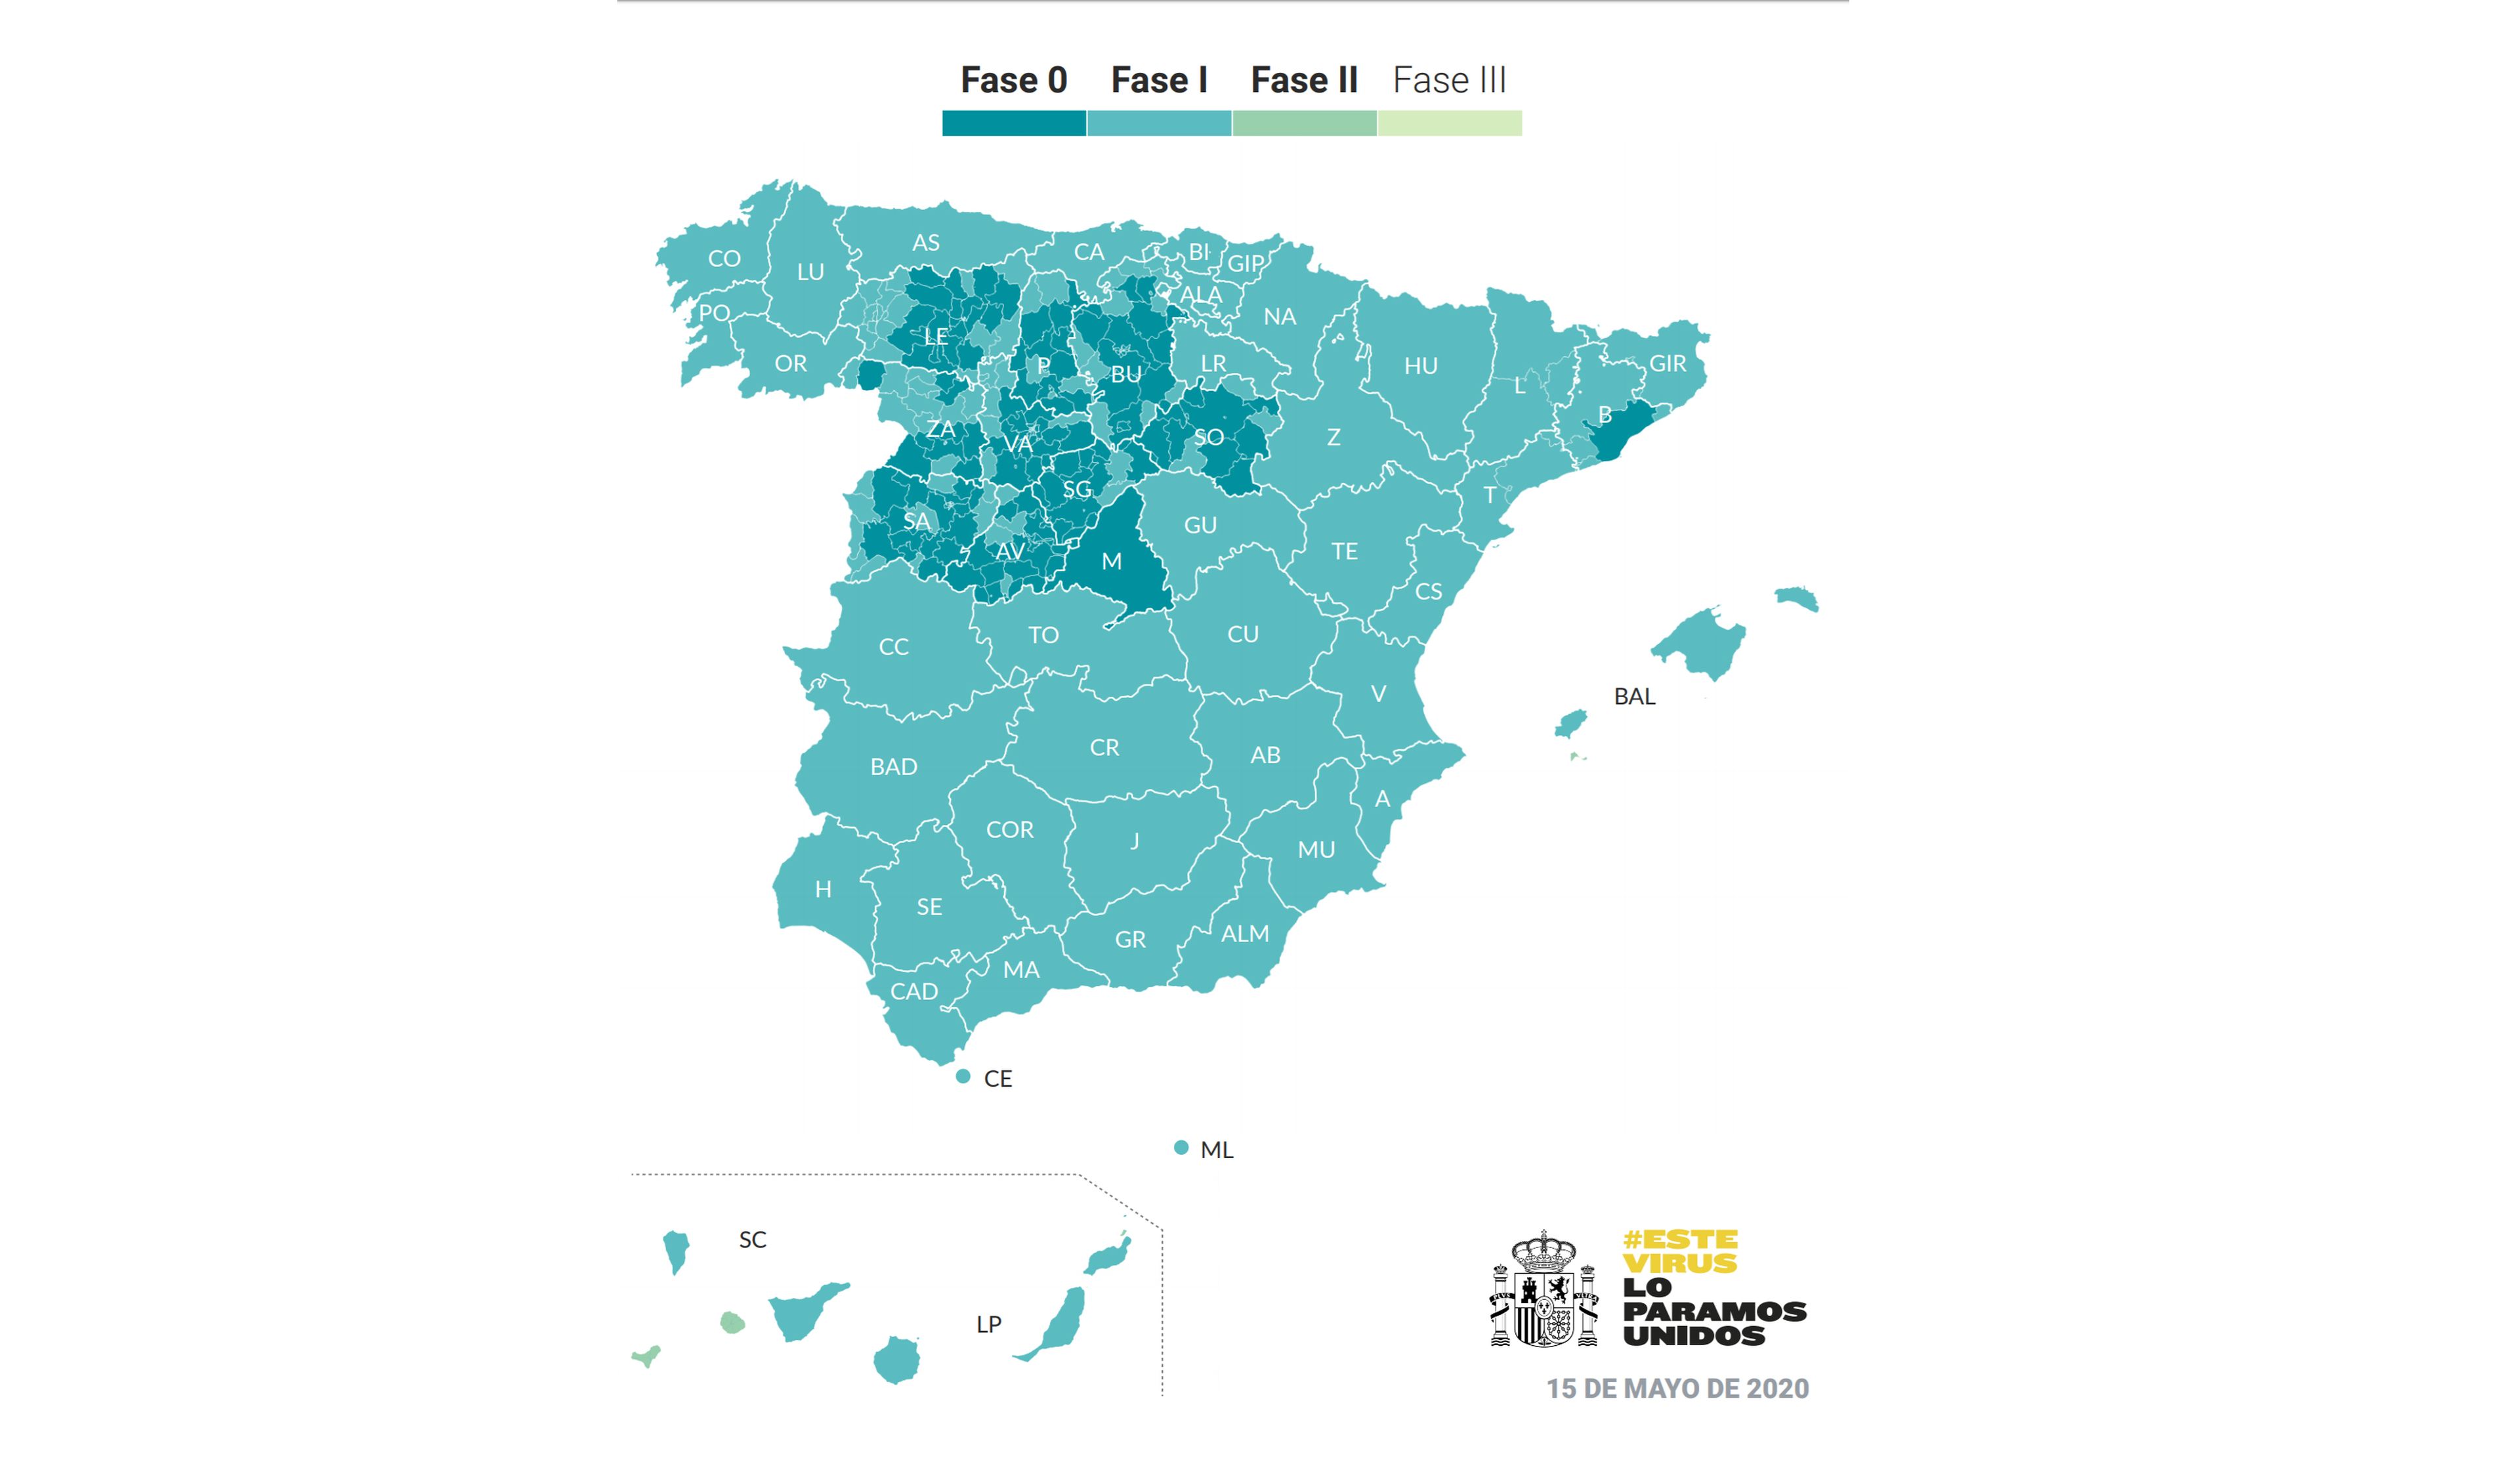 Mapa de las fases de desescalada en España